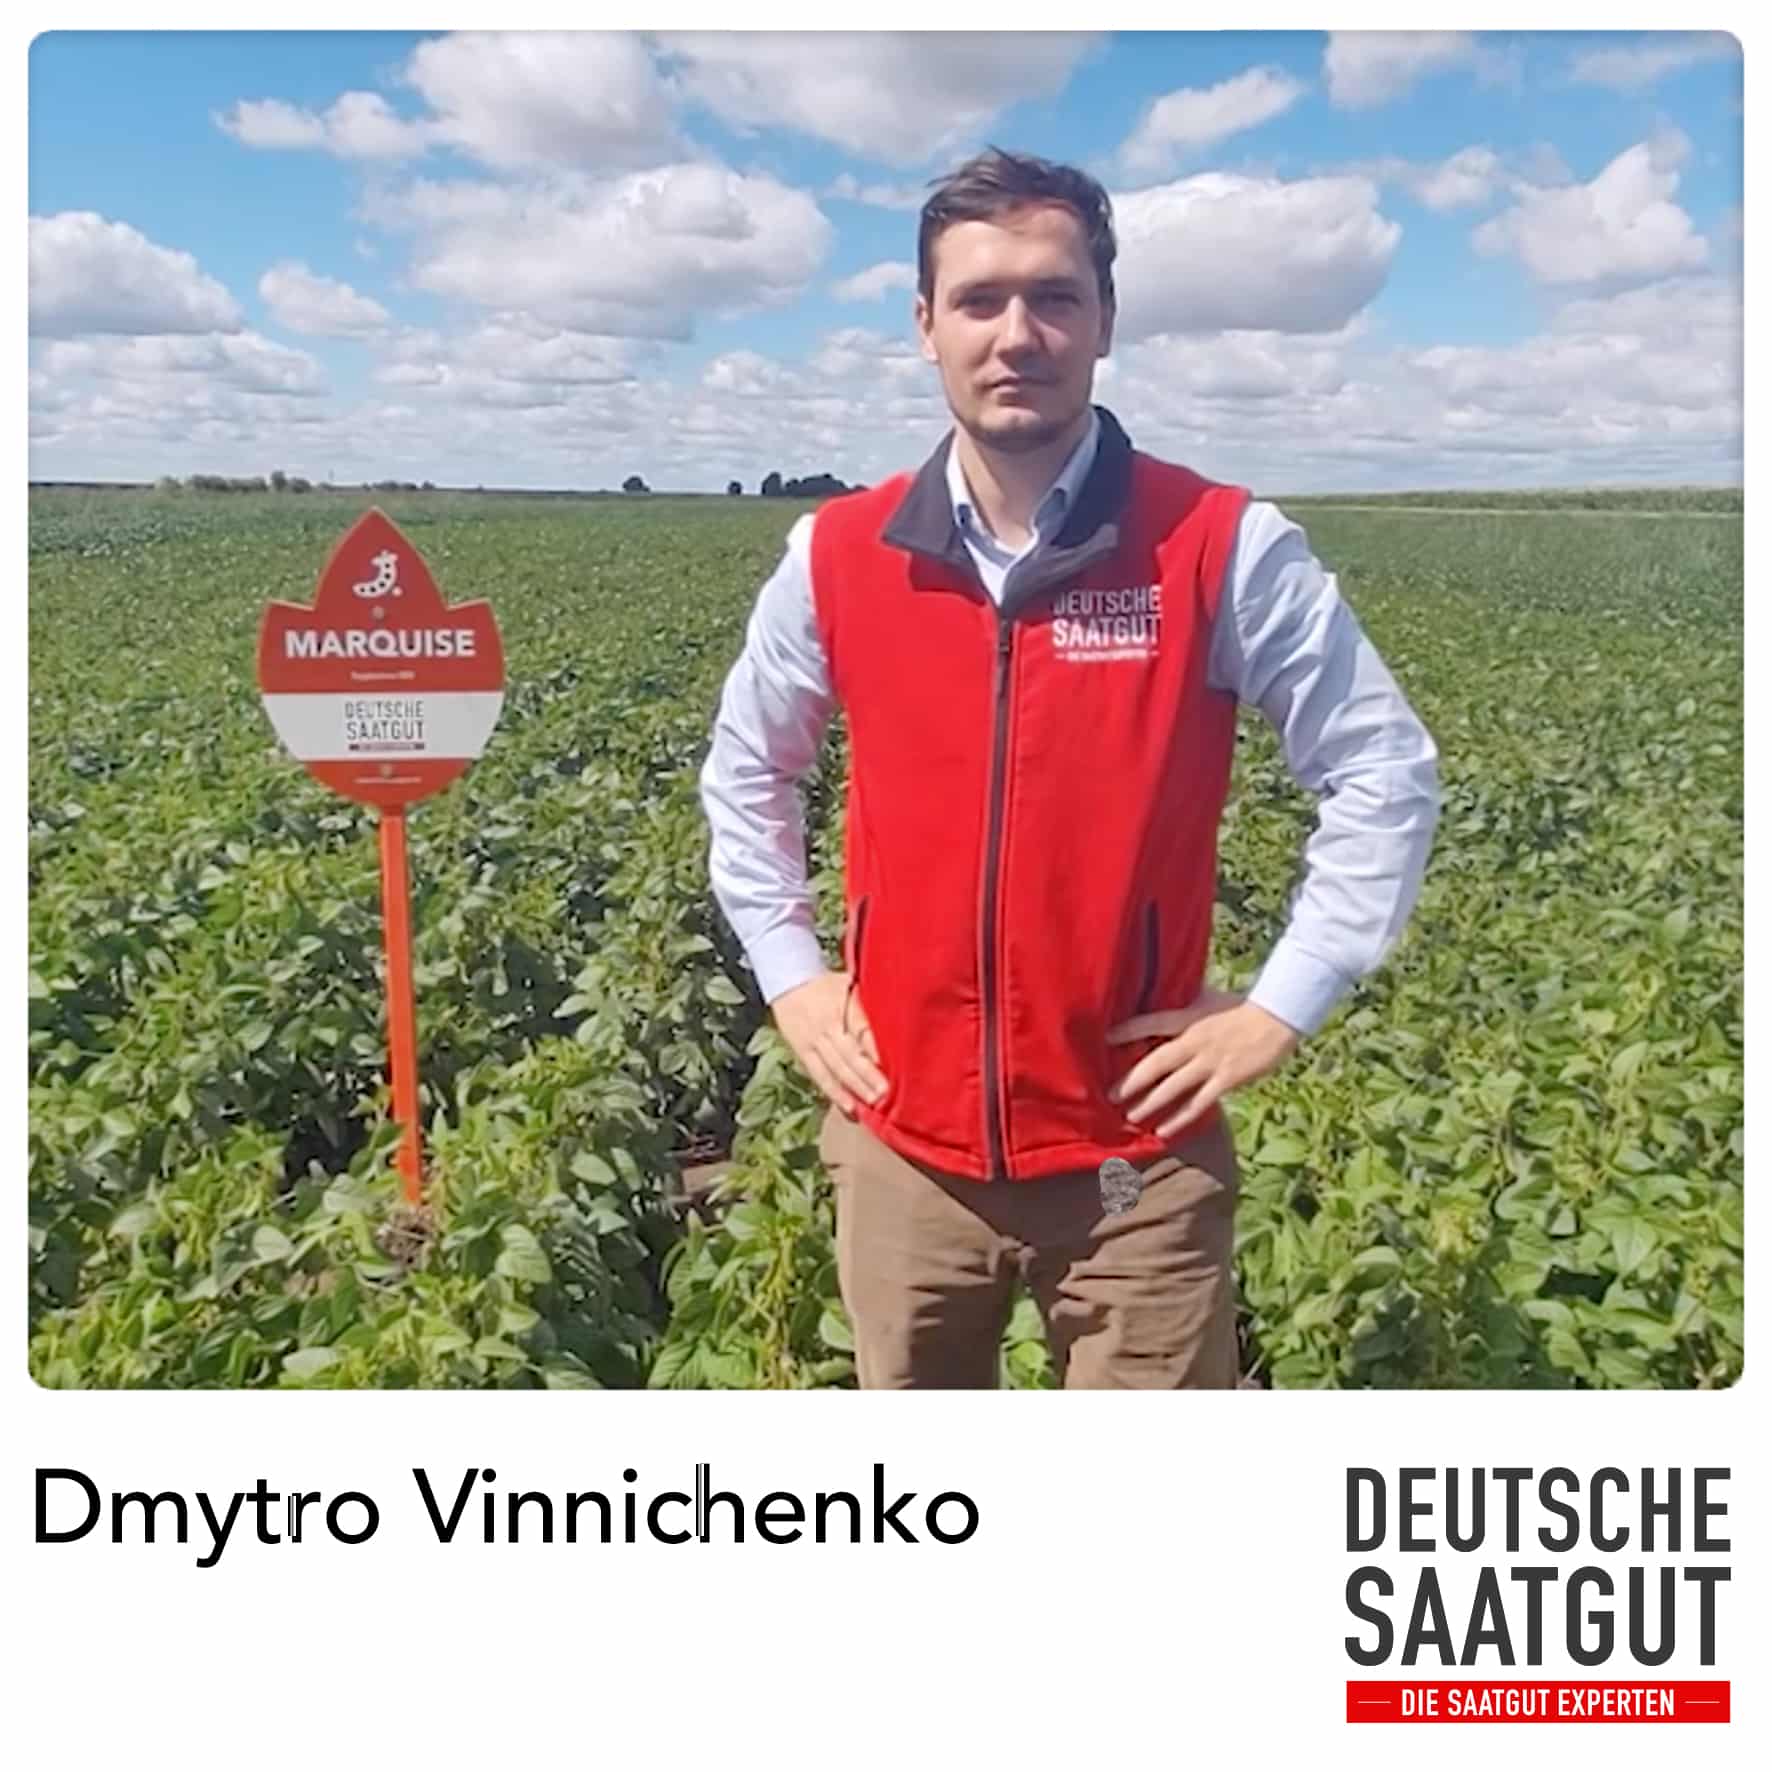 Dmytro Vinnichenko – Praxisfläche Sojaanbau – MARQUISE, Landkreis Burgenlandkreis, Sachsen-Anhalt